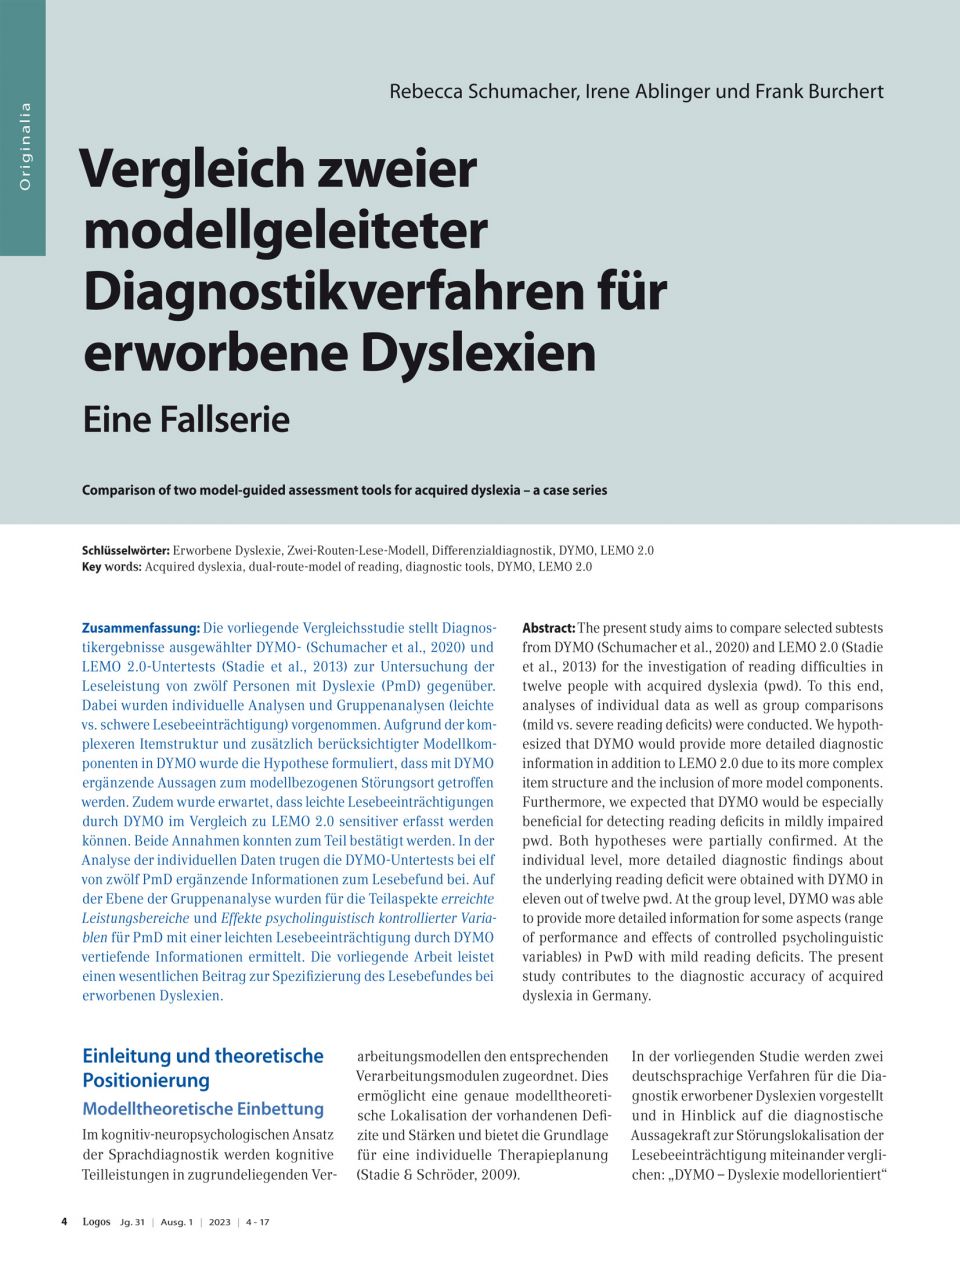 Vergleich zweier modellgeleiteter Diagnostikverfahren für erworbene Dyslexien – Eine Fallserie